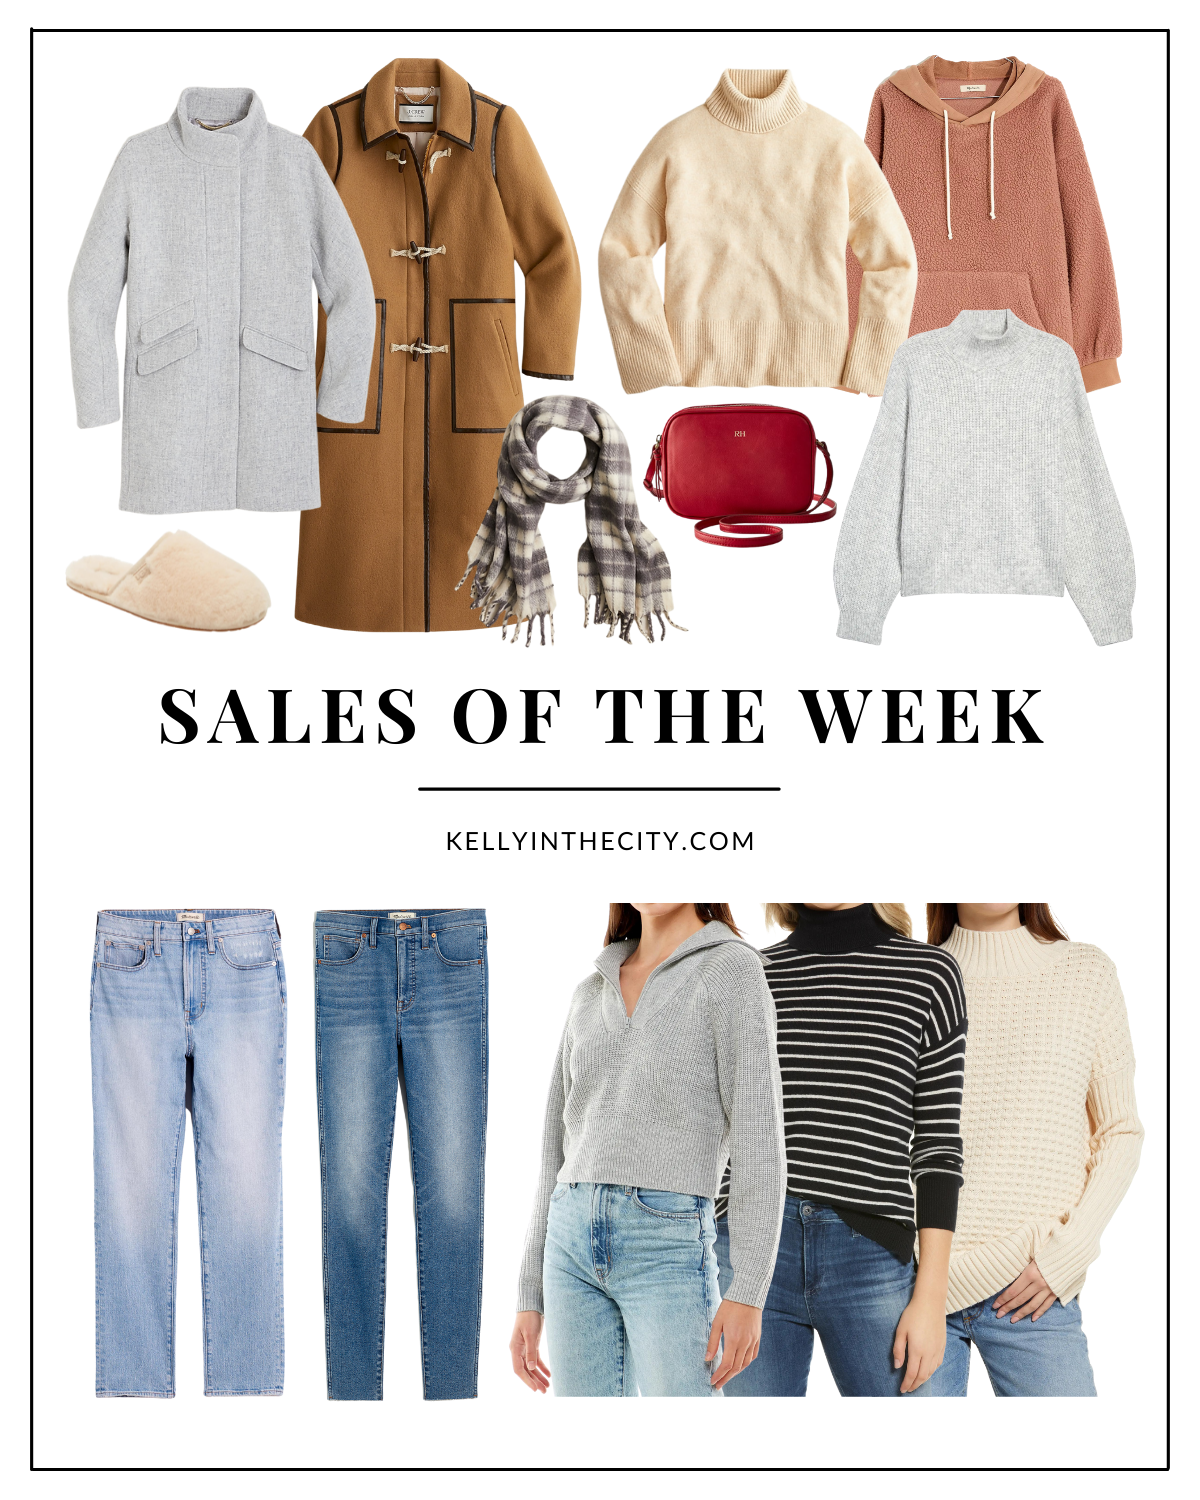 Sales of the Week